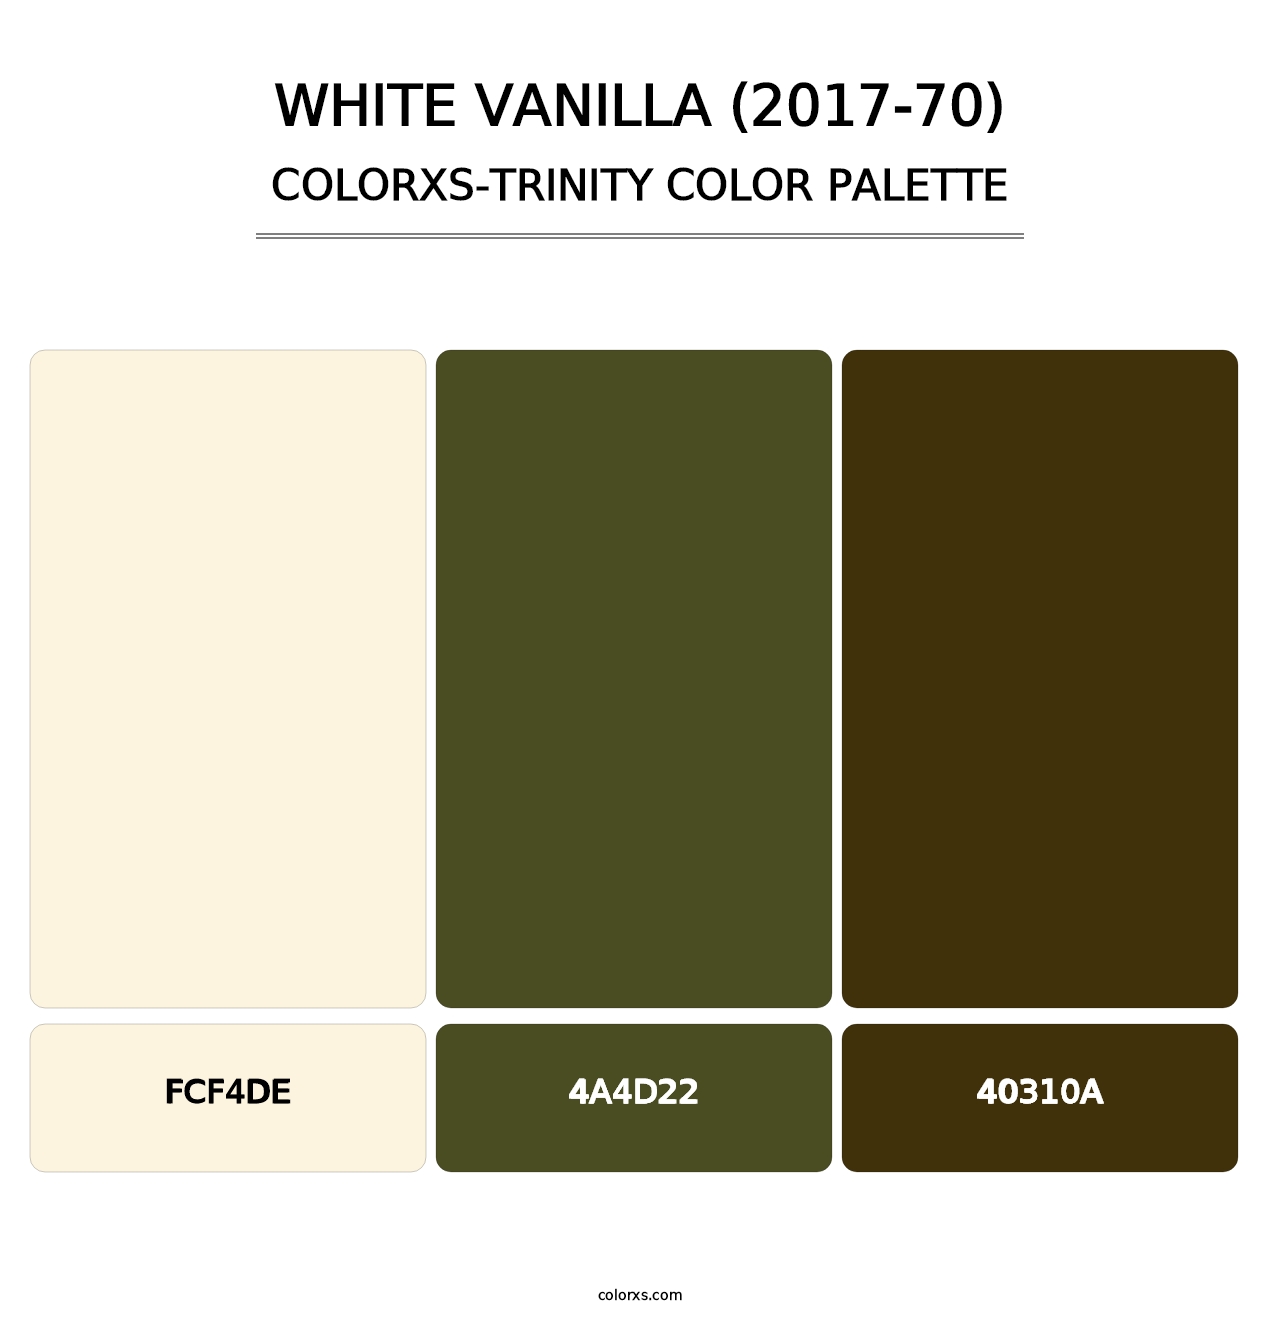 White Vanilla (2017-70) - Colorxs Trinity Palette